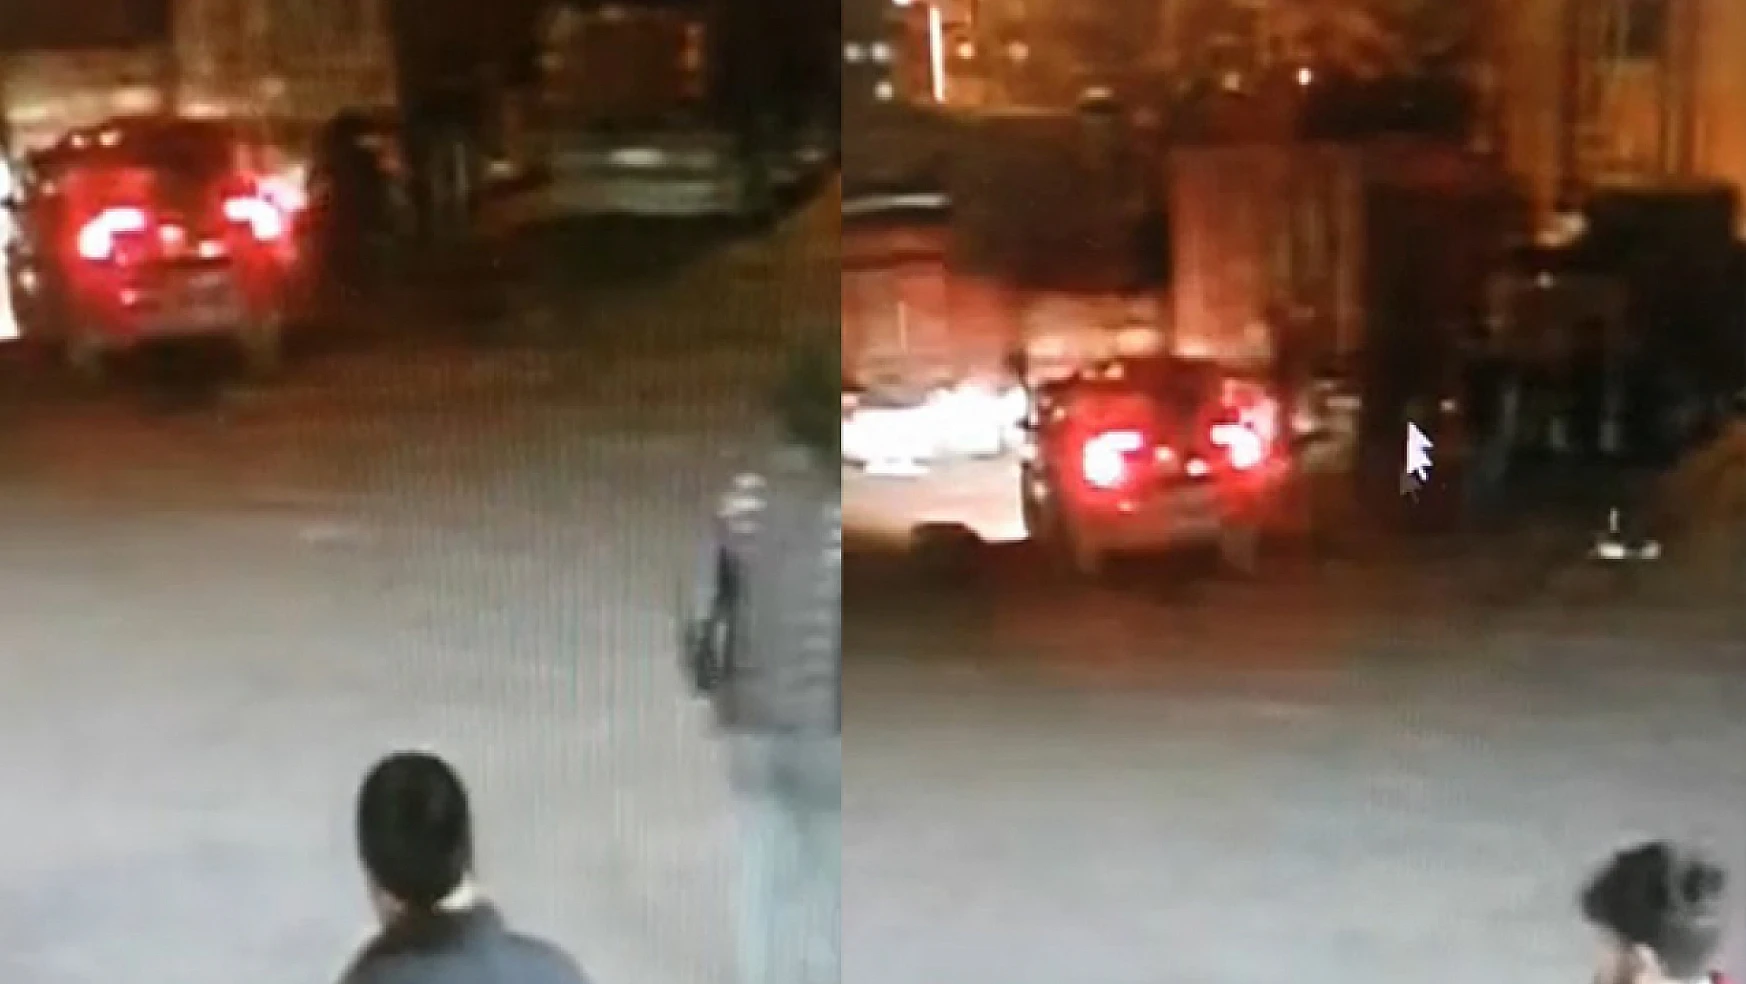 Konya'da araçta patlama olunca camdan çıkıp kaçtılar